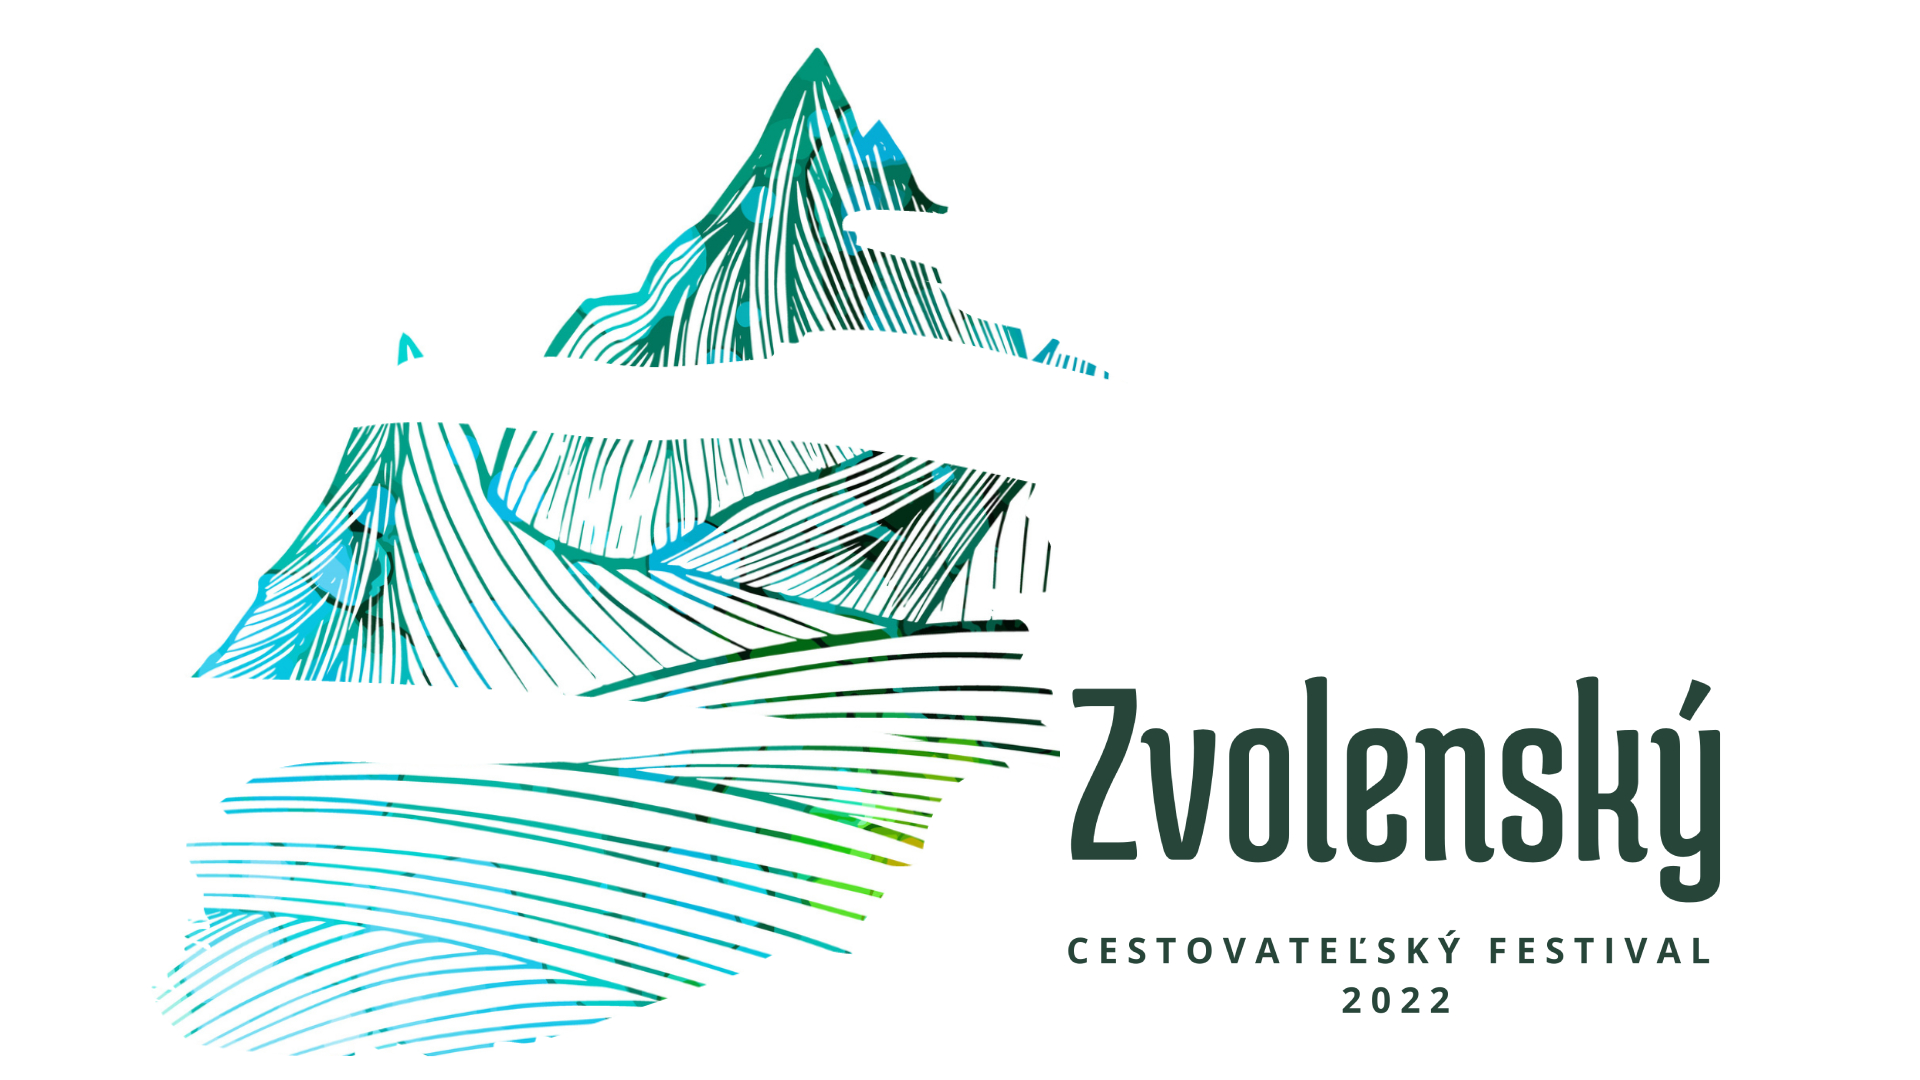 Zvolenský cestovateľský festival 2022